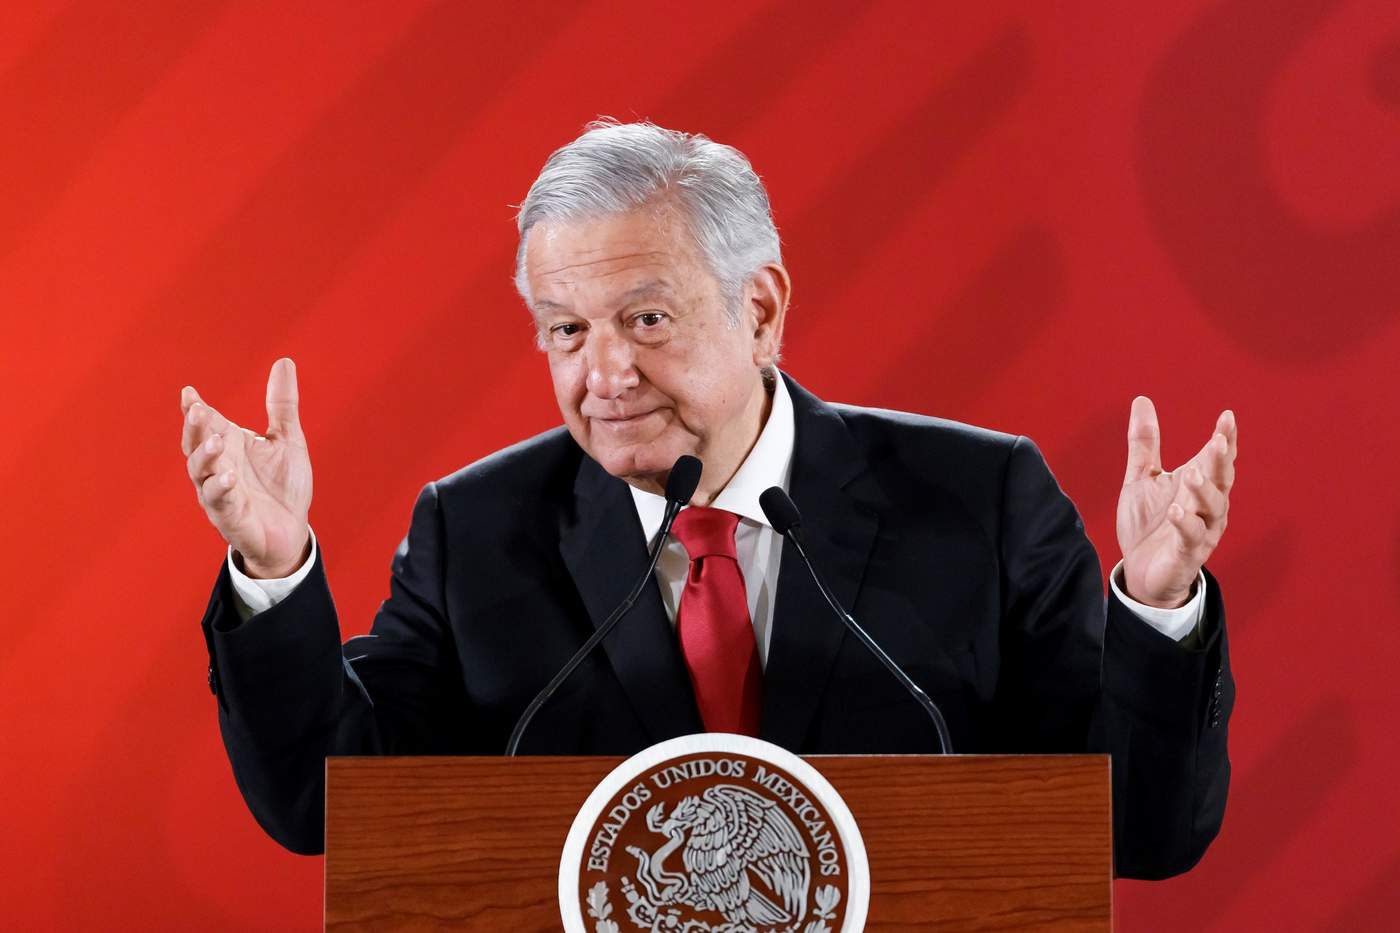 El presidente Andrés Manuel López Obrador afirmó que México no se involucrará en cuestiones electorales con Estados Unidos, ni responderá a cuestionamientos que tengan que ver con las elecciones. (EFE)